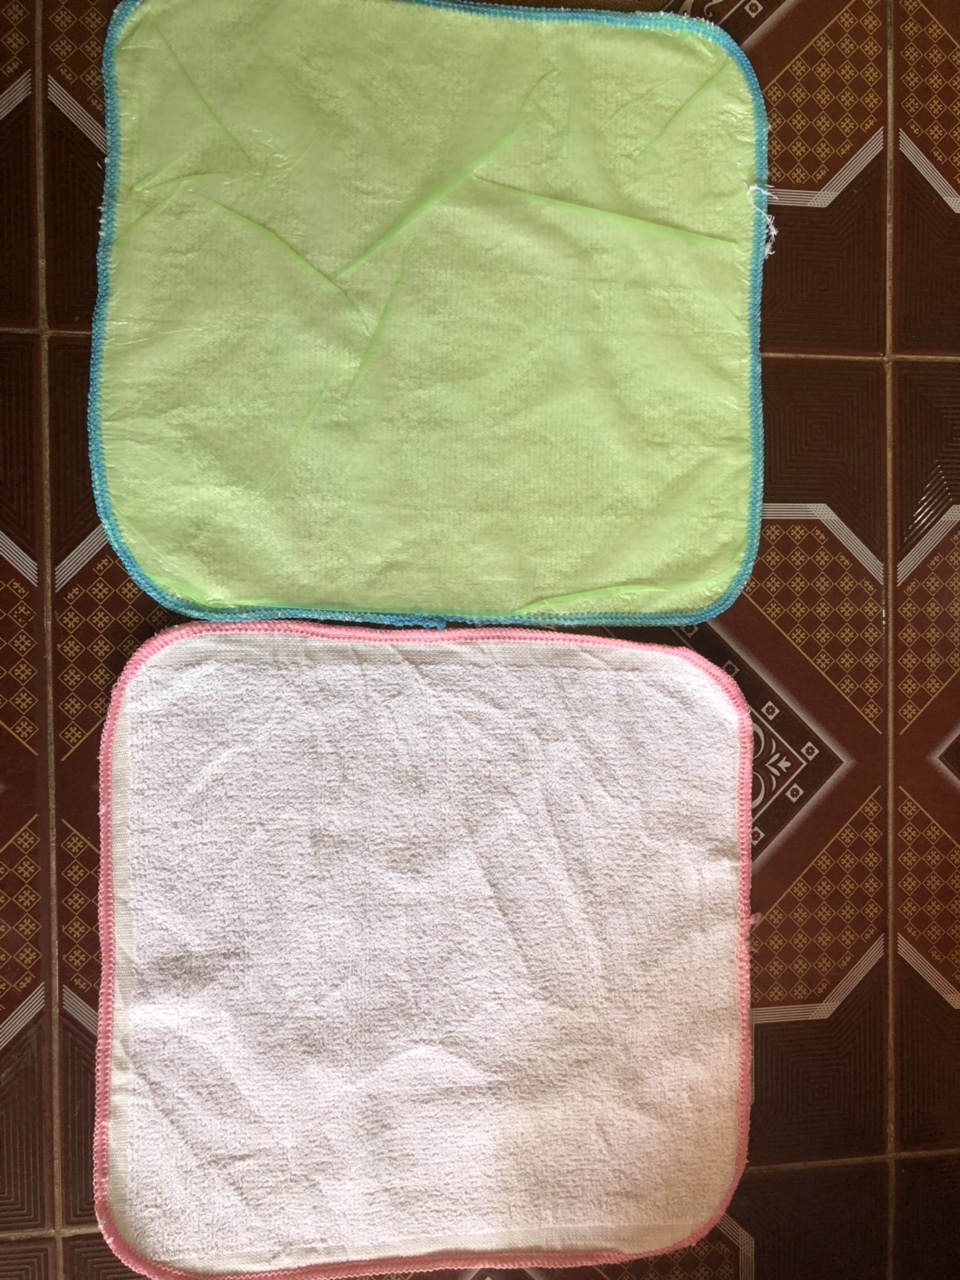 10 Tấm lót chống thấm bền đẹp cho bé giặt máy được Đô Rê Mon